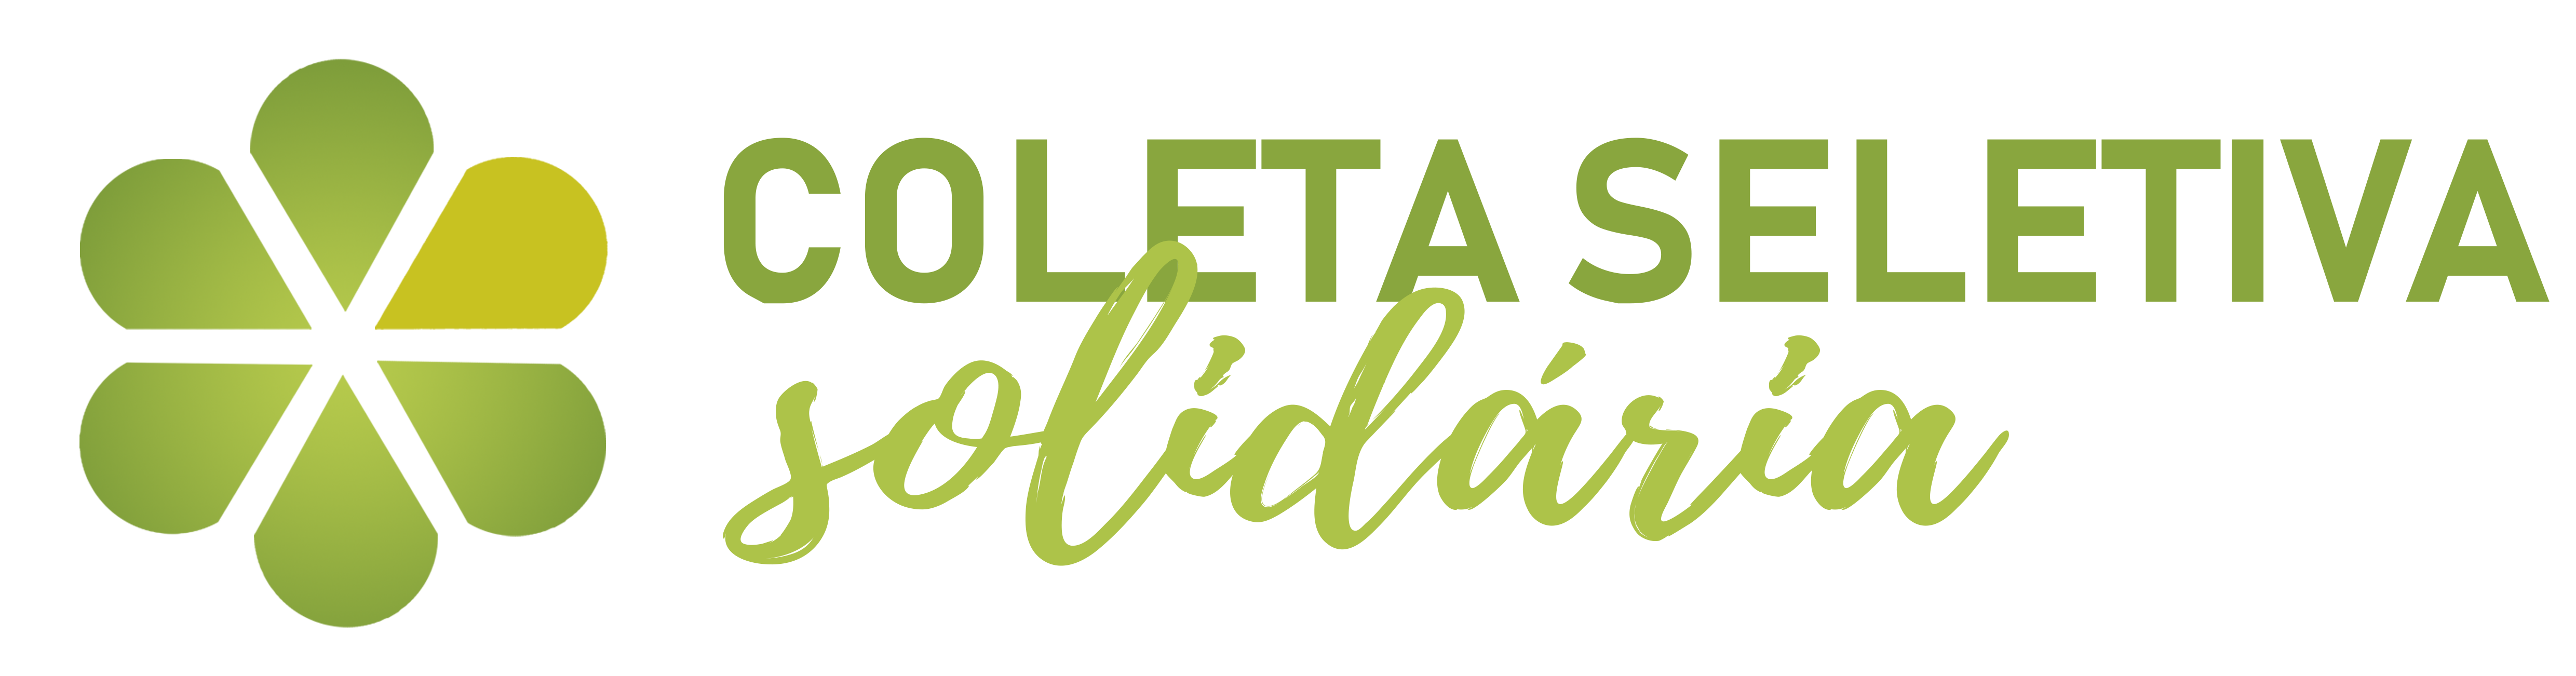 Logotipo da Comissão de Coleta Seletiva Solidária da Universidade Federal de Juiz de Fora, Governador Valadares